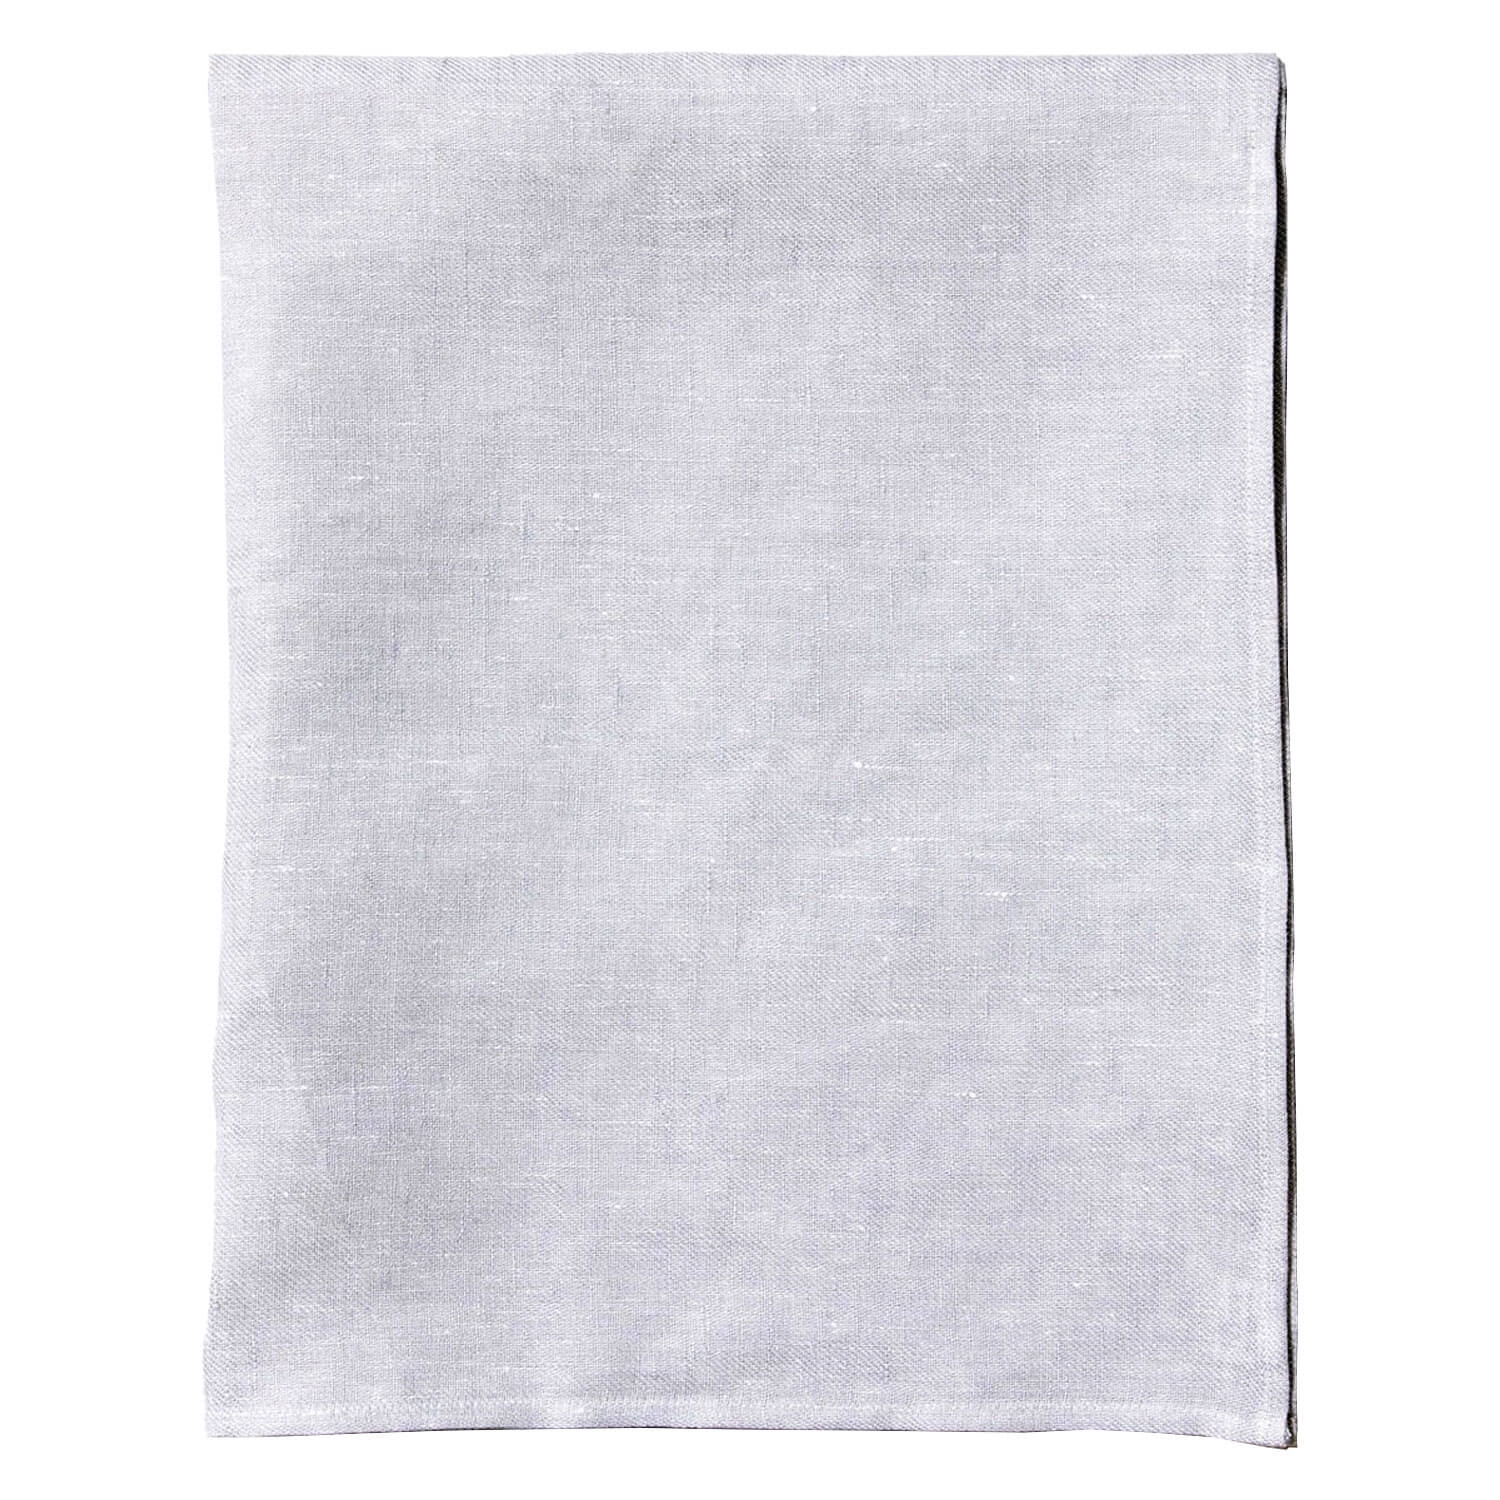 Produktbild von Soeder - Body Towel Grey